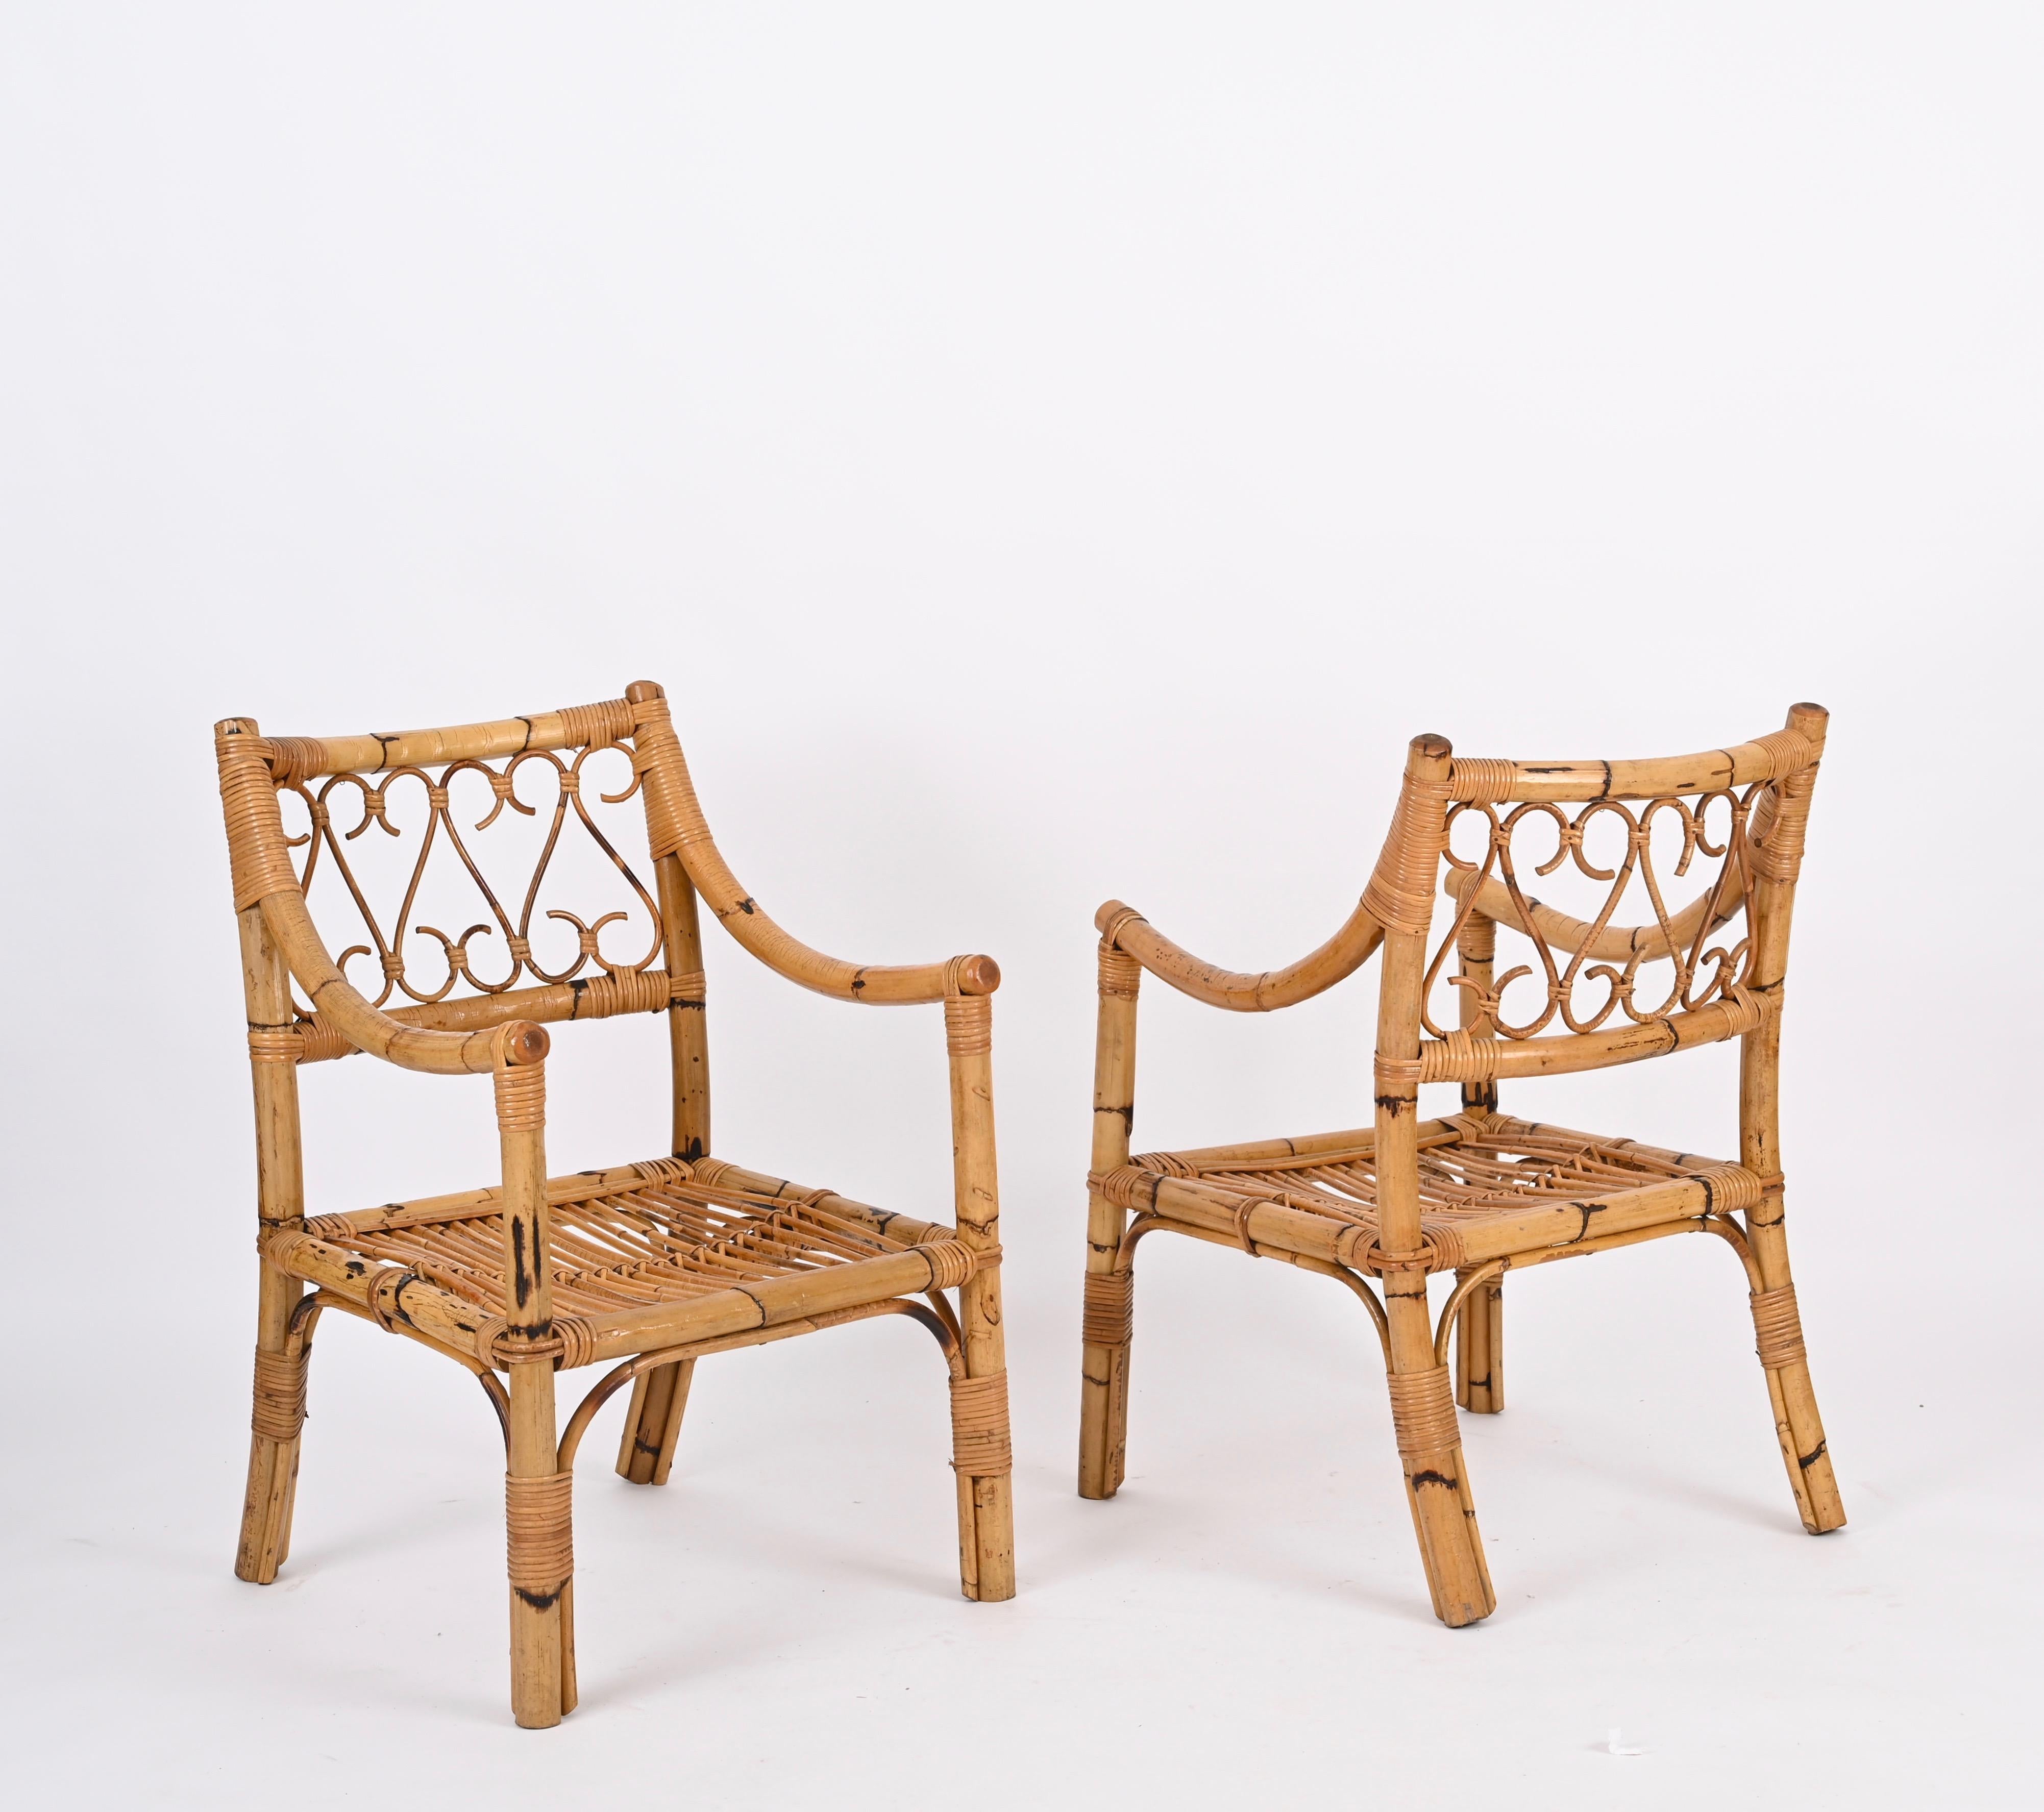 Zwei fantastische Mid-Century-Sessel aus Bambus, Rattan und Weide. Dieses unglaubliche Set wurde in den 1970er Jahren in Italien von Vivai del Sud hergestellt.

Diese bequemen Sessel haben eine Struktur aus robustem, gebogenem Bambus, die